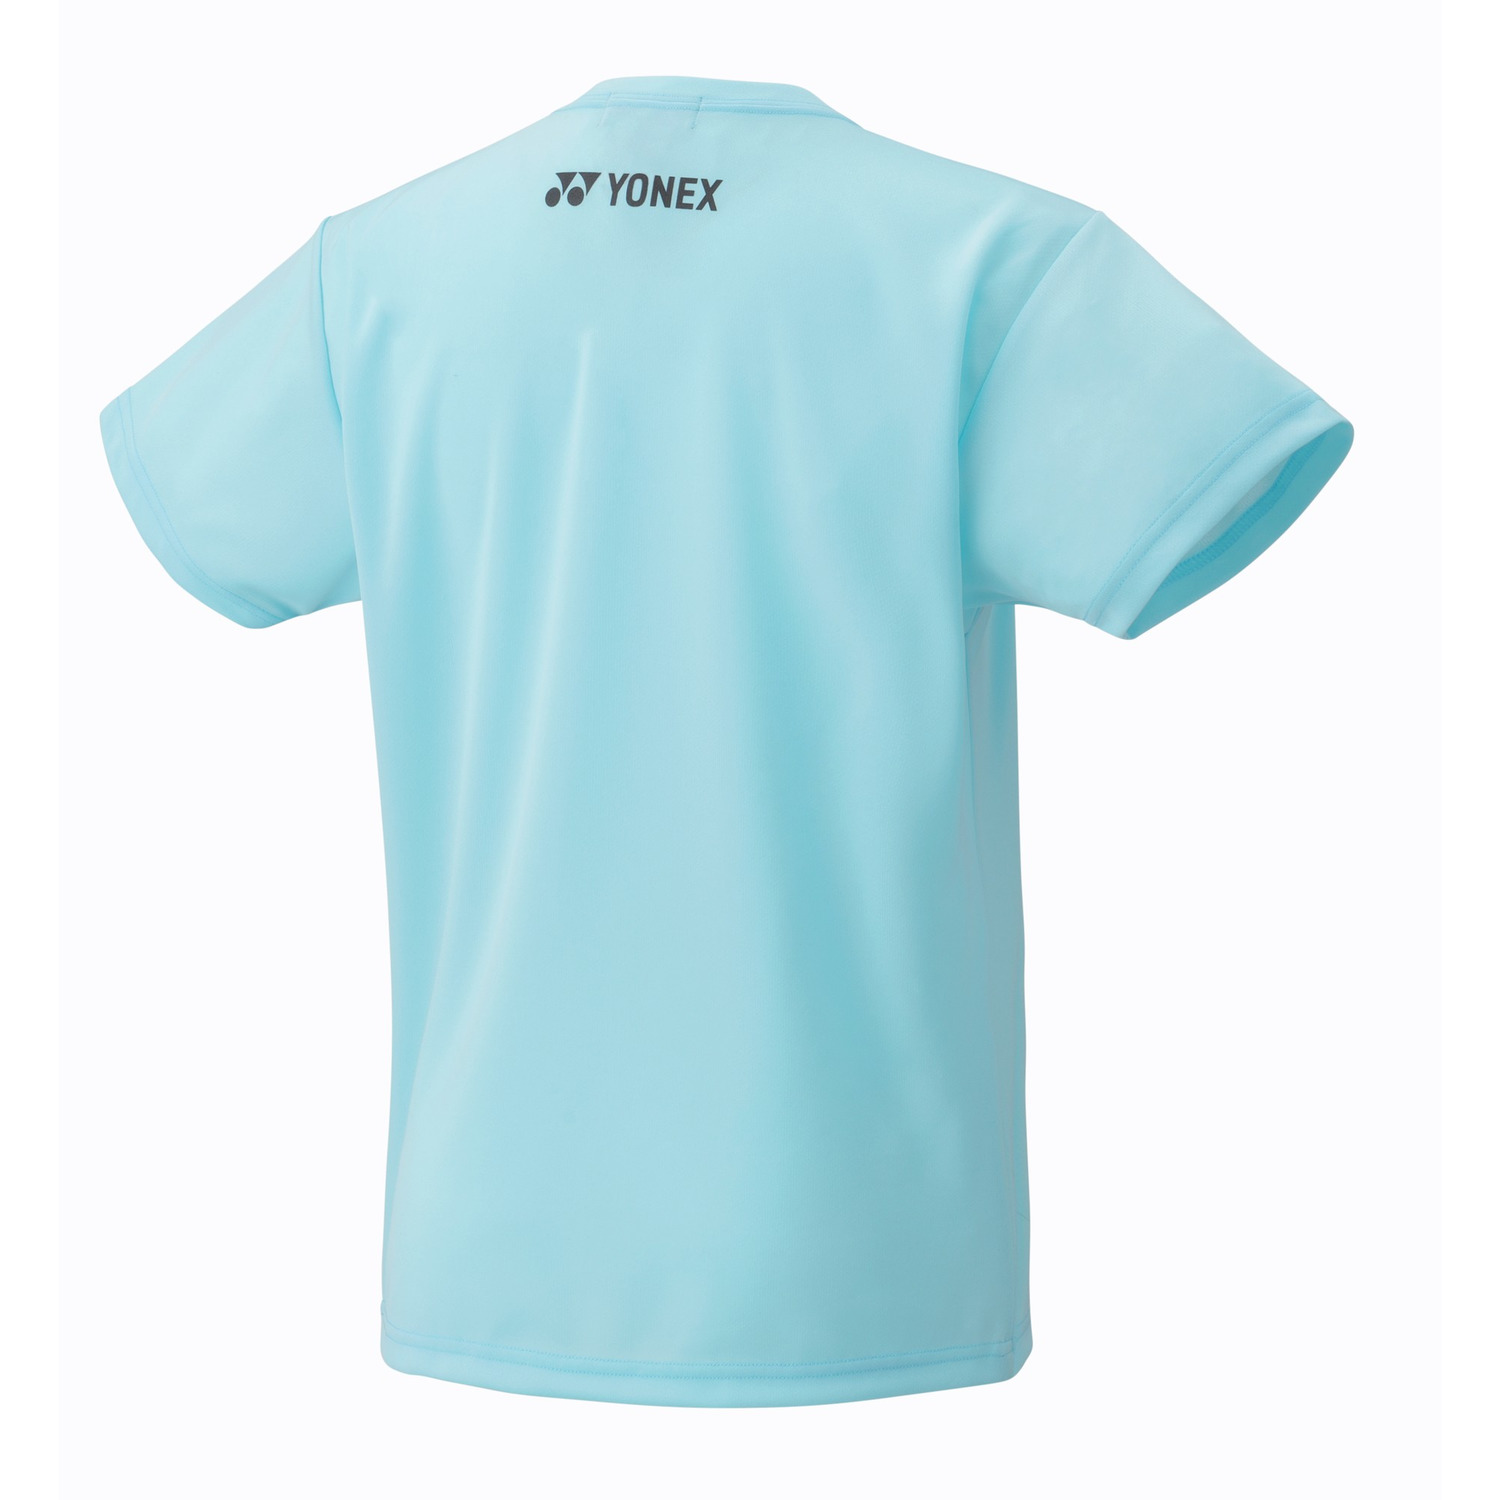 Yonex Sports Shirt 16727Y Aqua Blue (Made in Japan) WOMEN'S